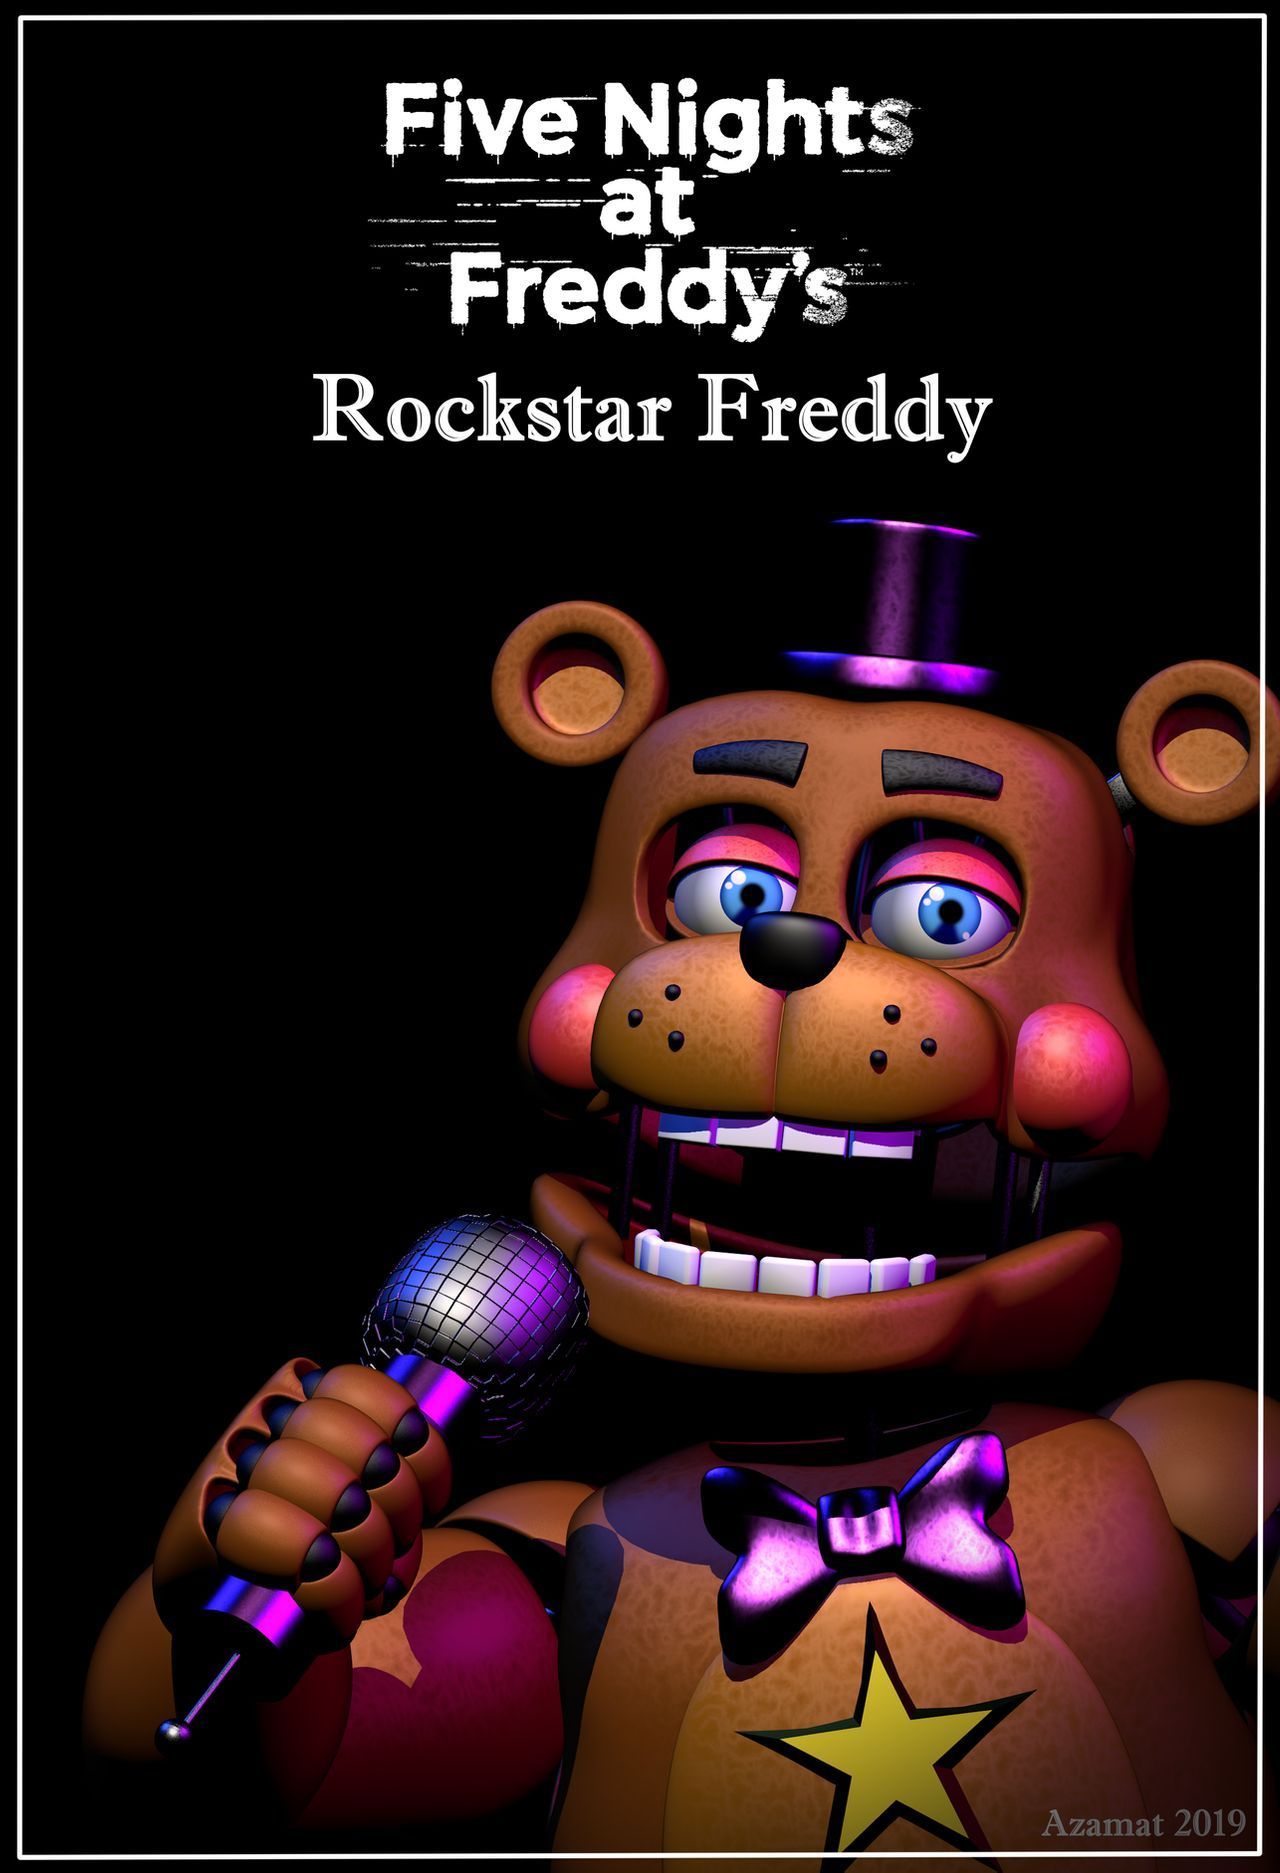 Rockstar Freddy poster. Fnaf, Freddy, Five nights at freddy's